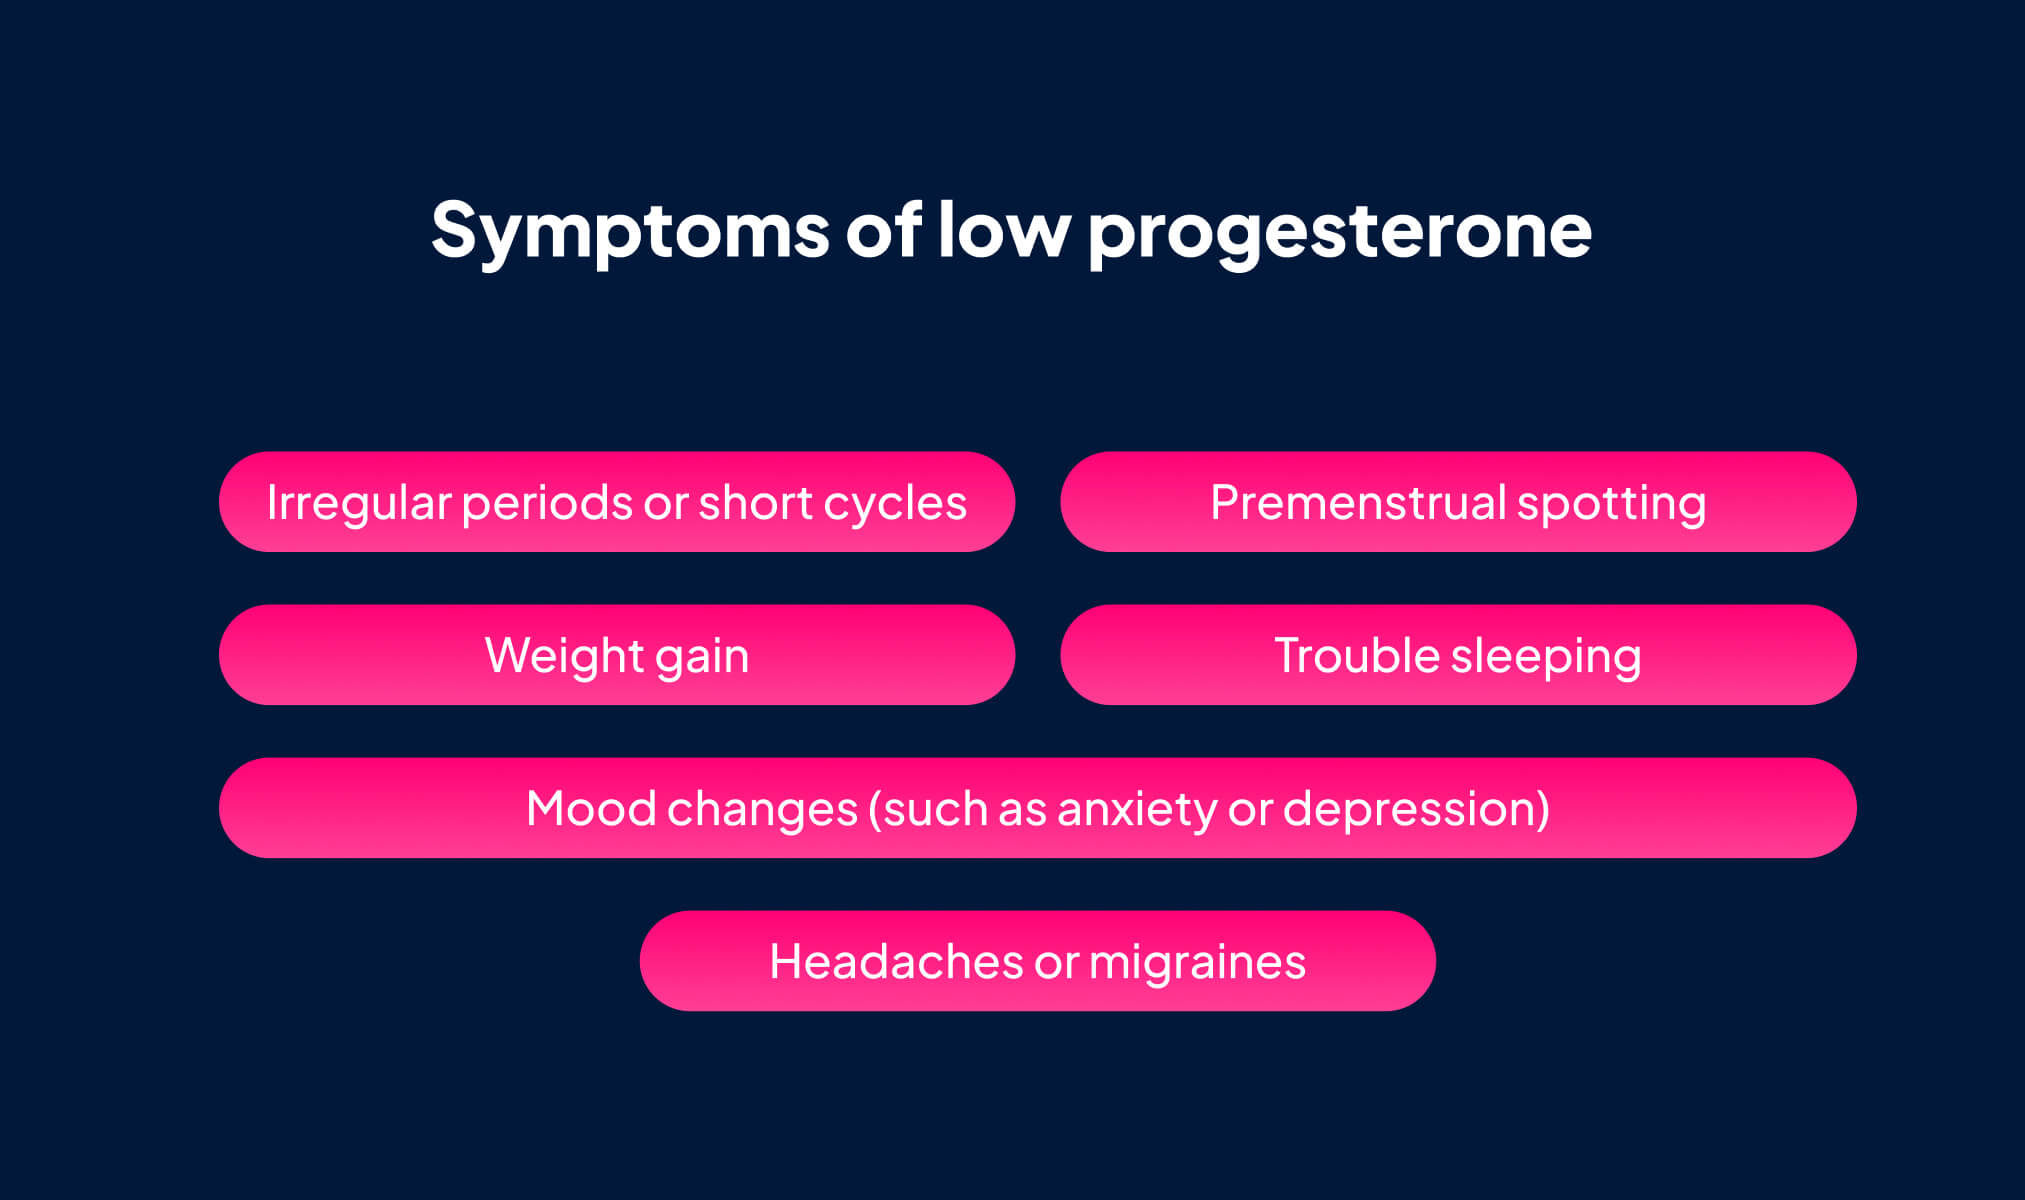 Symptoms of low progesterone